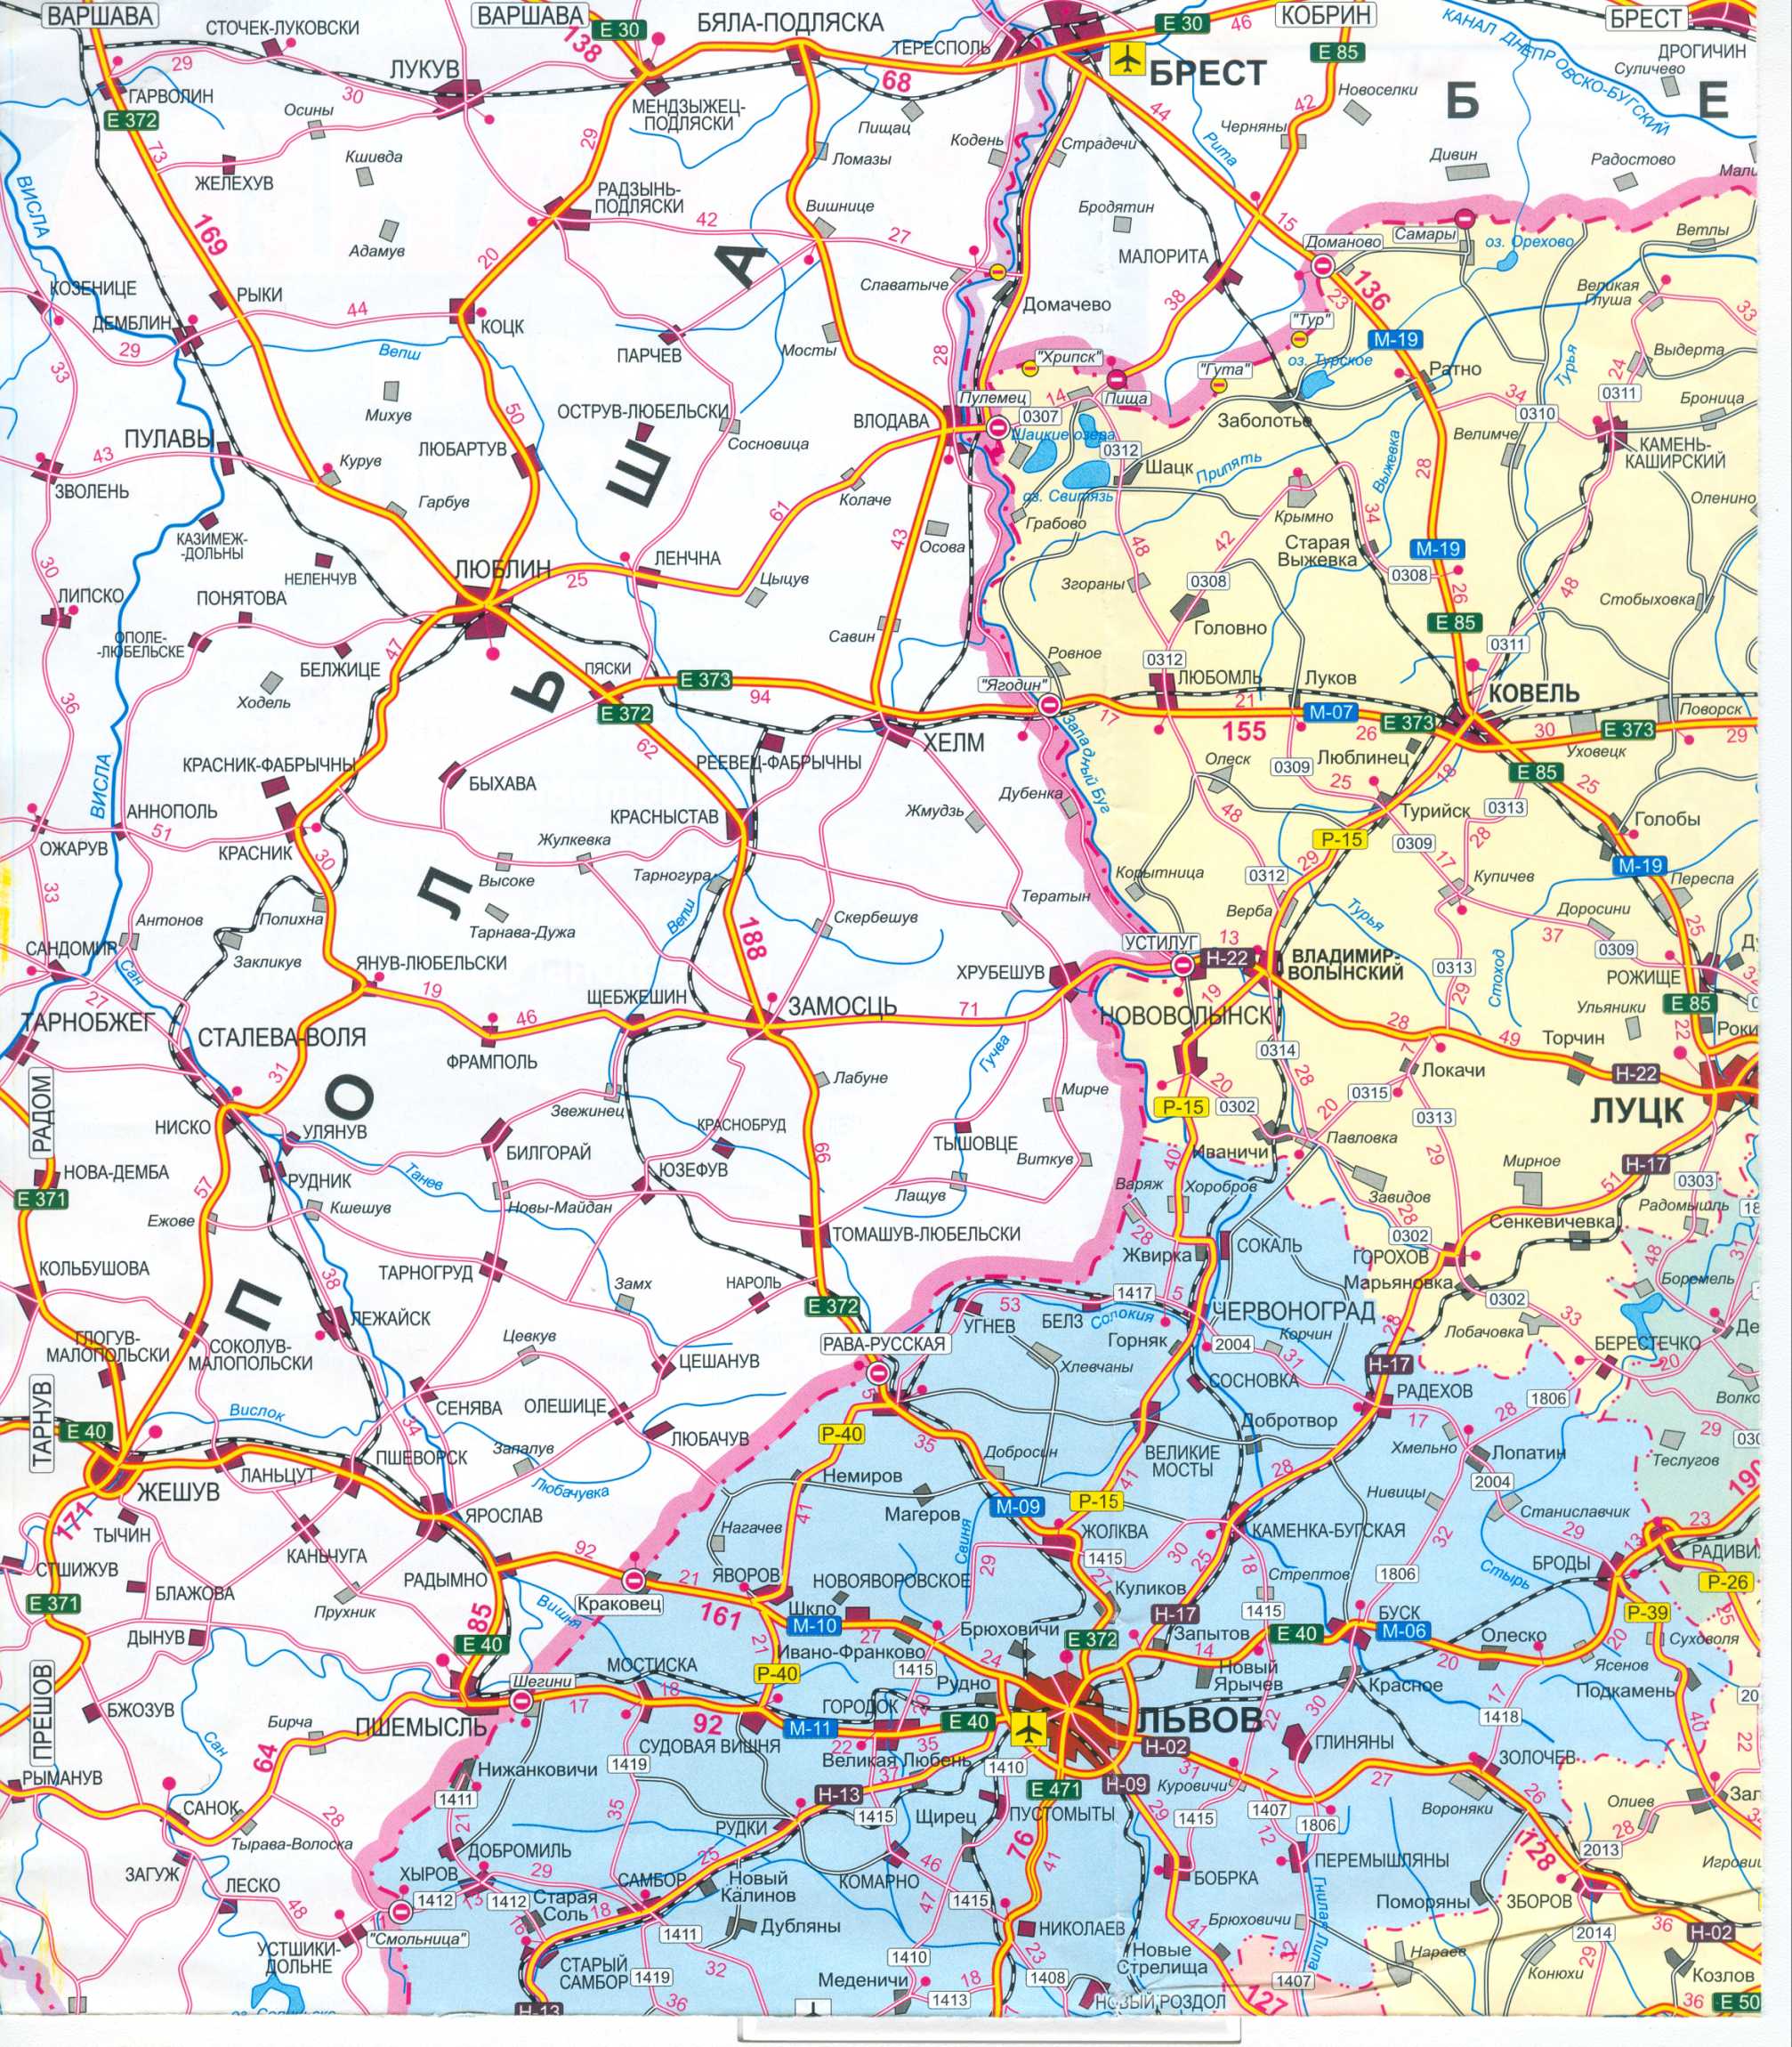 Карта Украины бесплатно. Карта дорог Украины скачать бесплатно. Большая карта дорог Украины бесплатно, A0